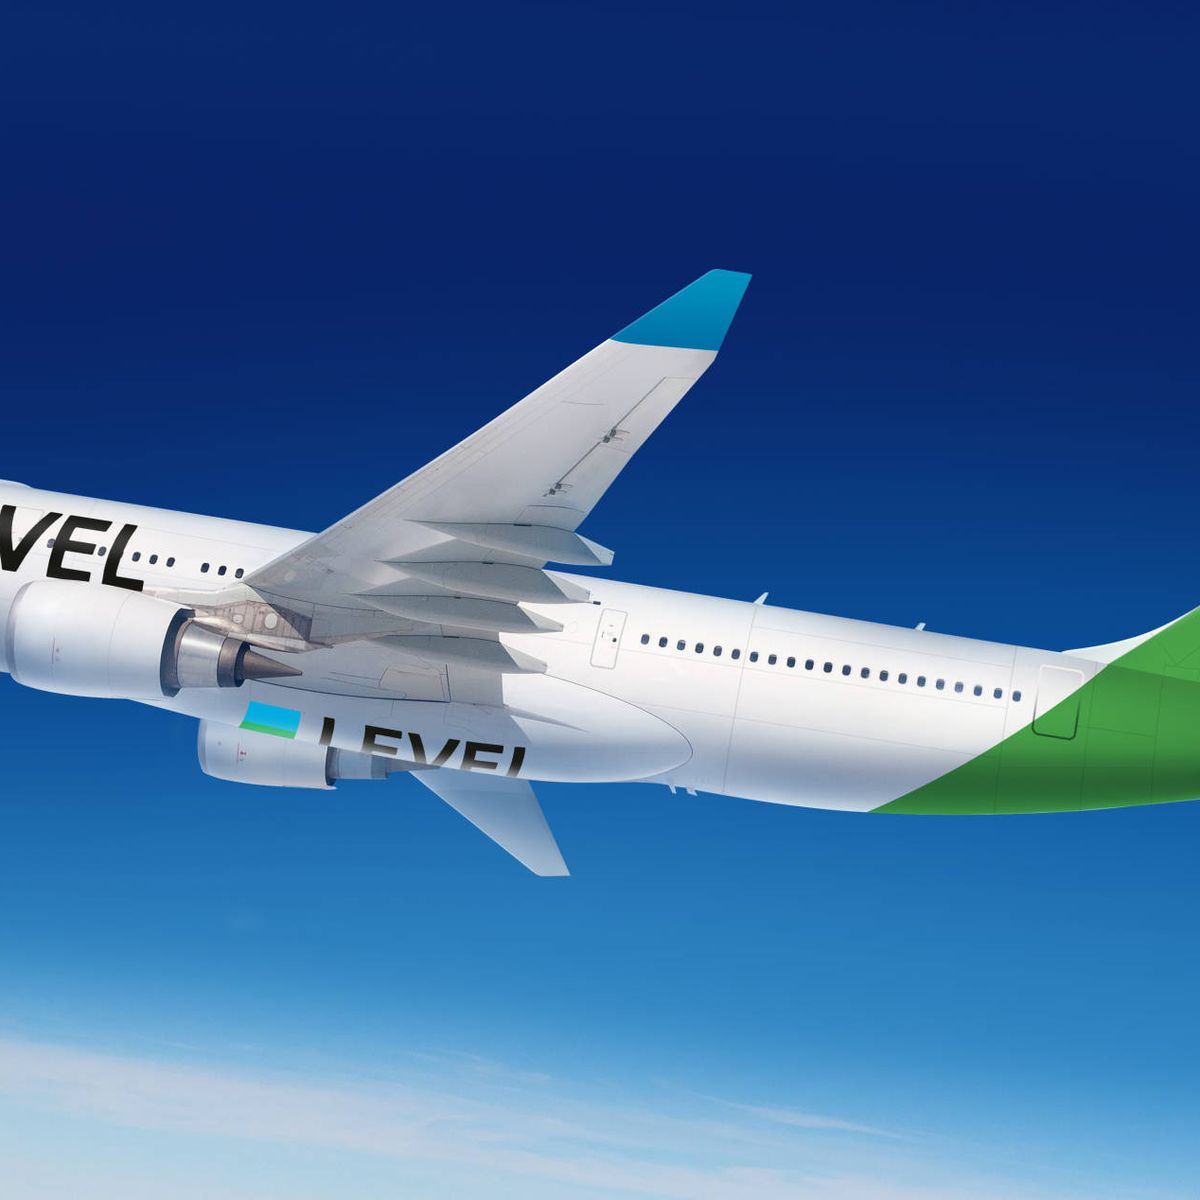 crea LEVEL (Iberia) para operar vuelos 'low cost' de largo recorrido desde El Prat